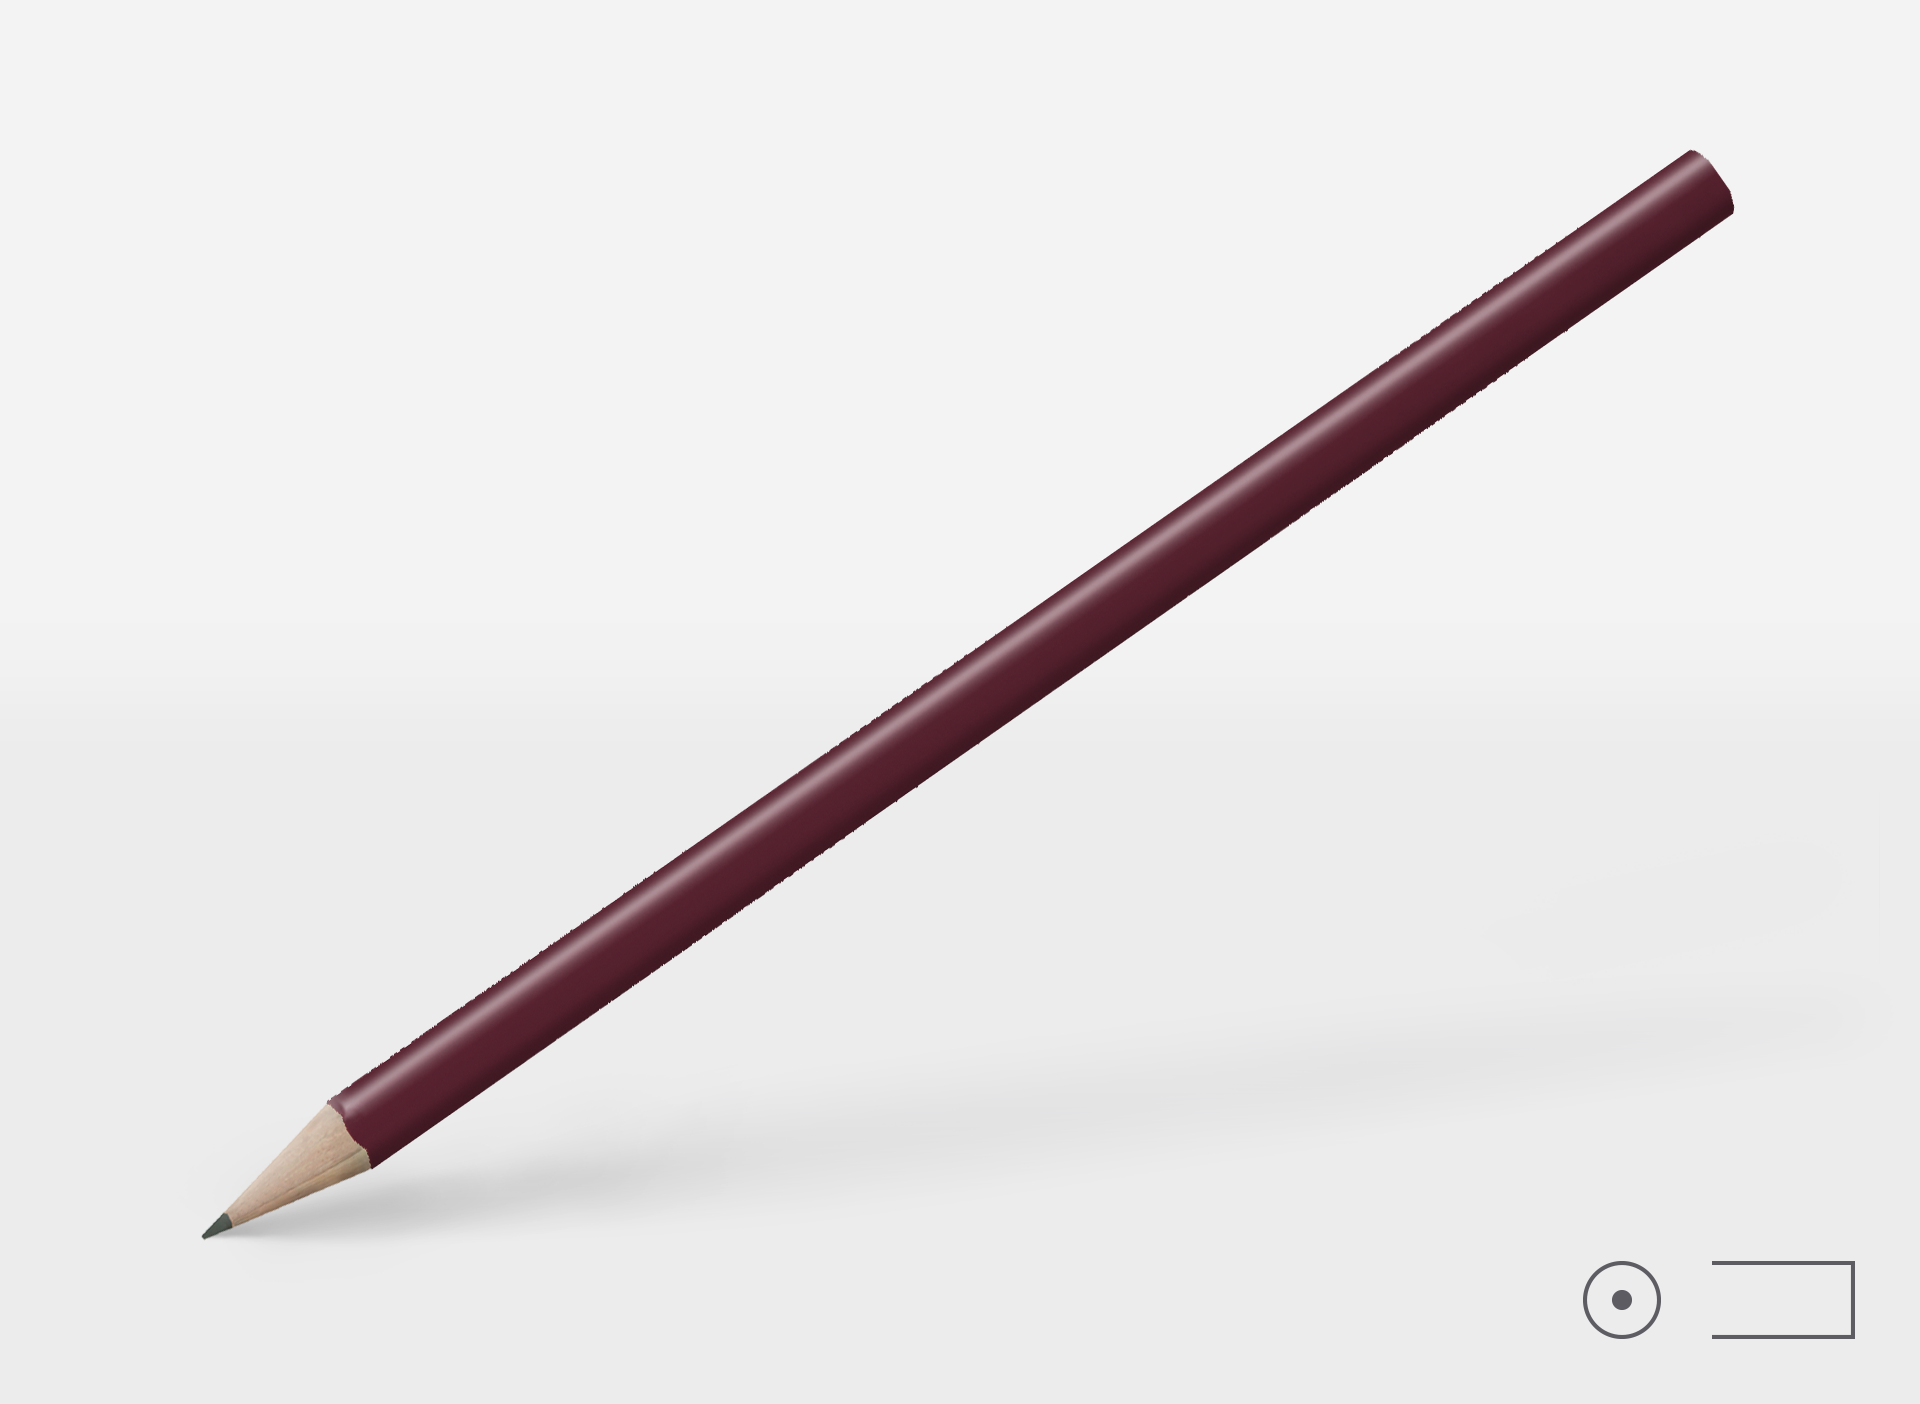 Bleistift 0243, bordeaux rot (ähnlich Pantone 505 ), rund